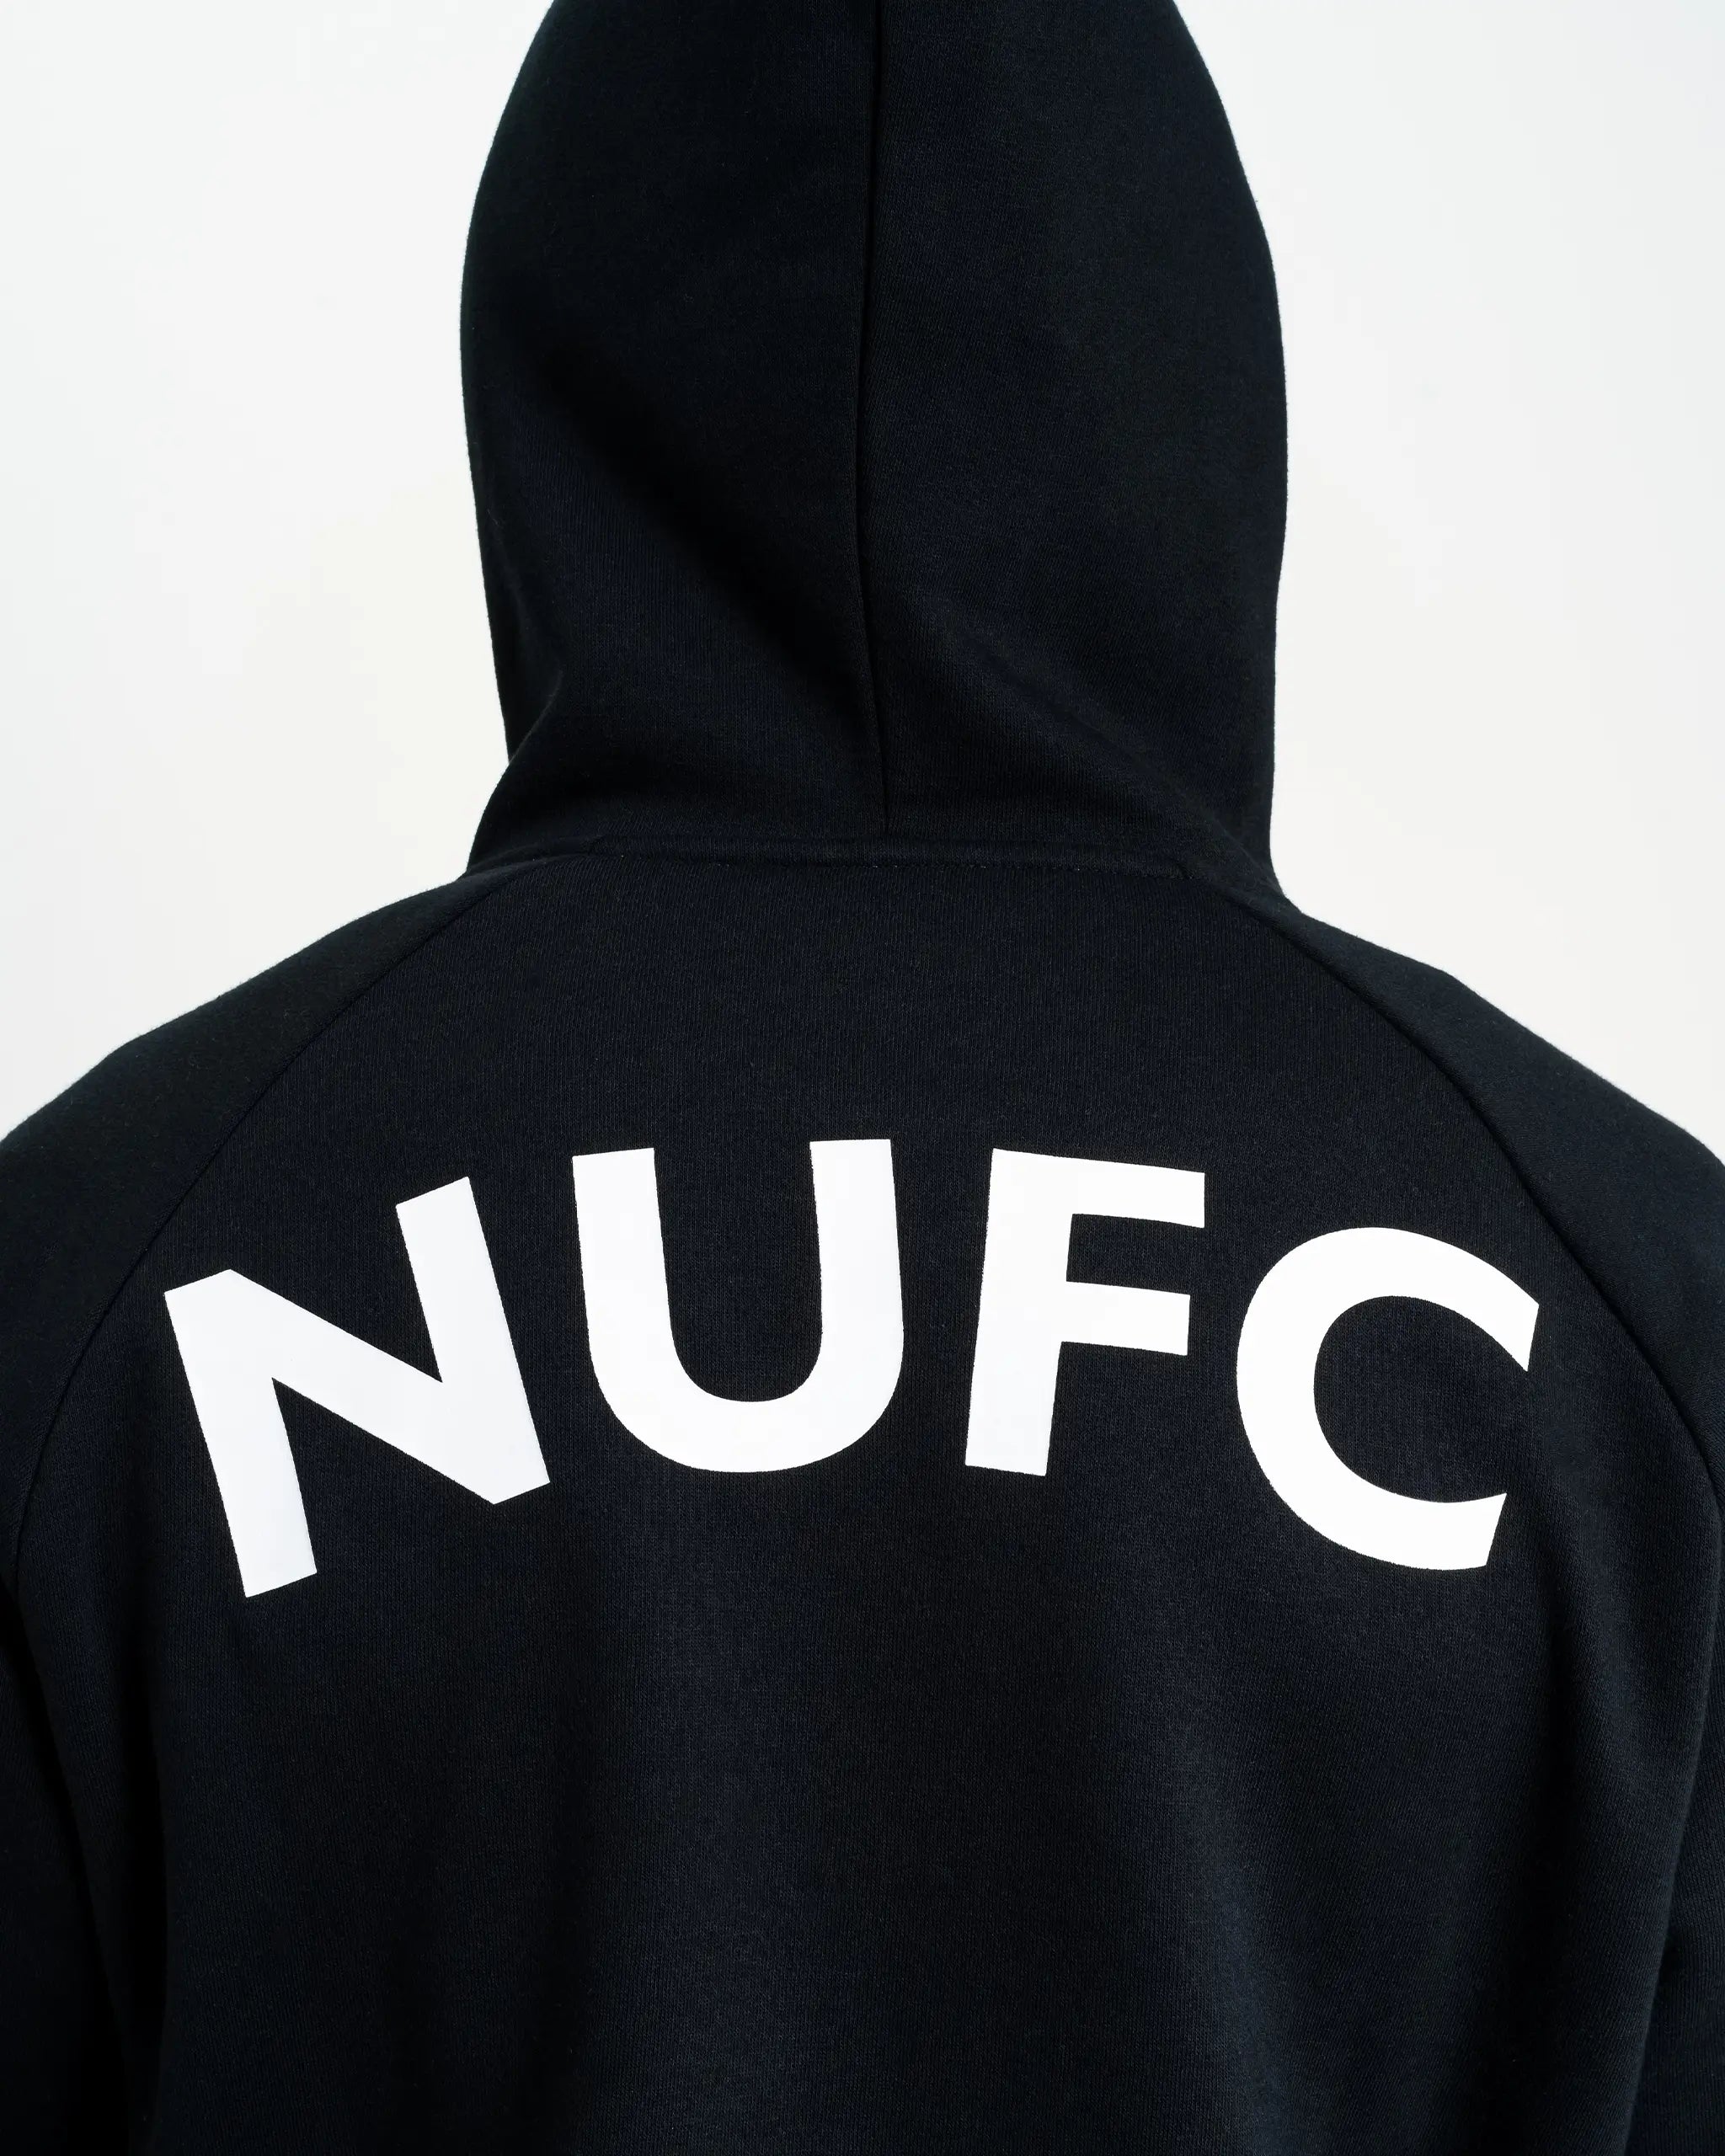 Newcastle United Men's Black Terrace Full Zip Hoodie